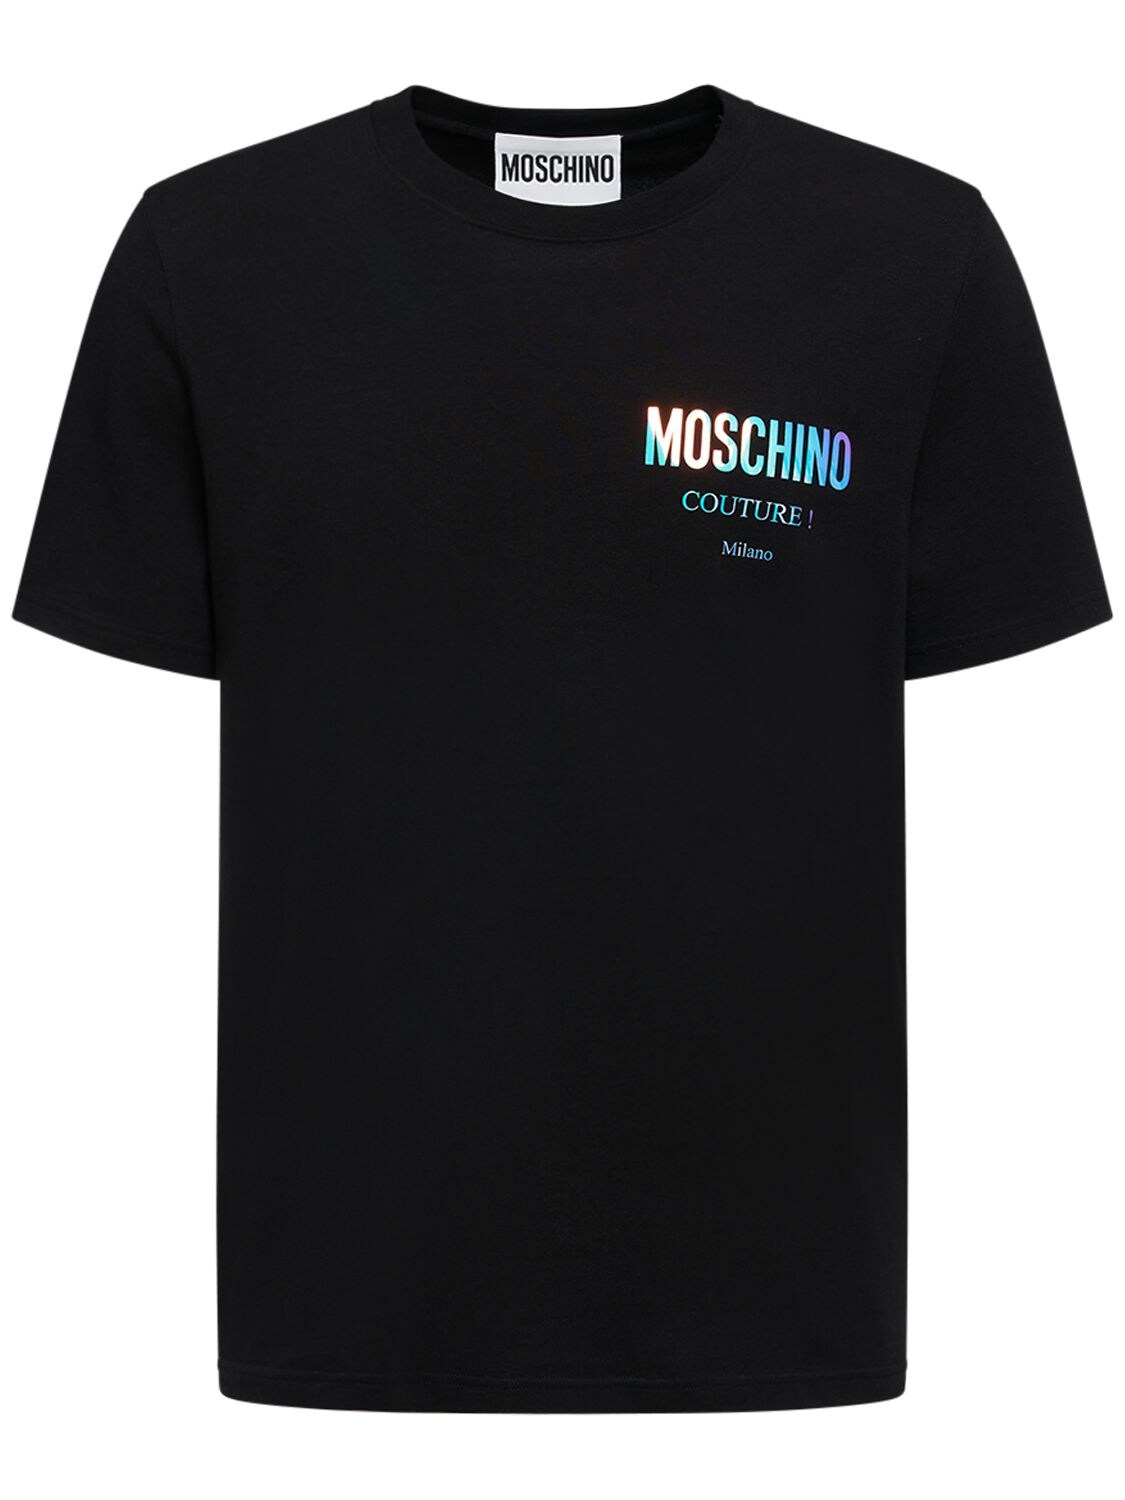 Schillerndes T-shirt Aus Baumwolljersey Mit Logo - MOSCHINO - Modalova